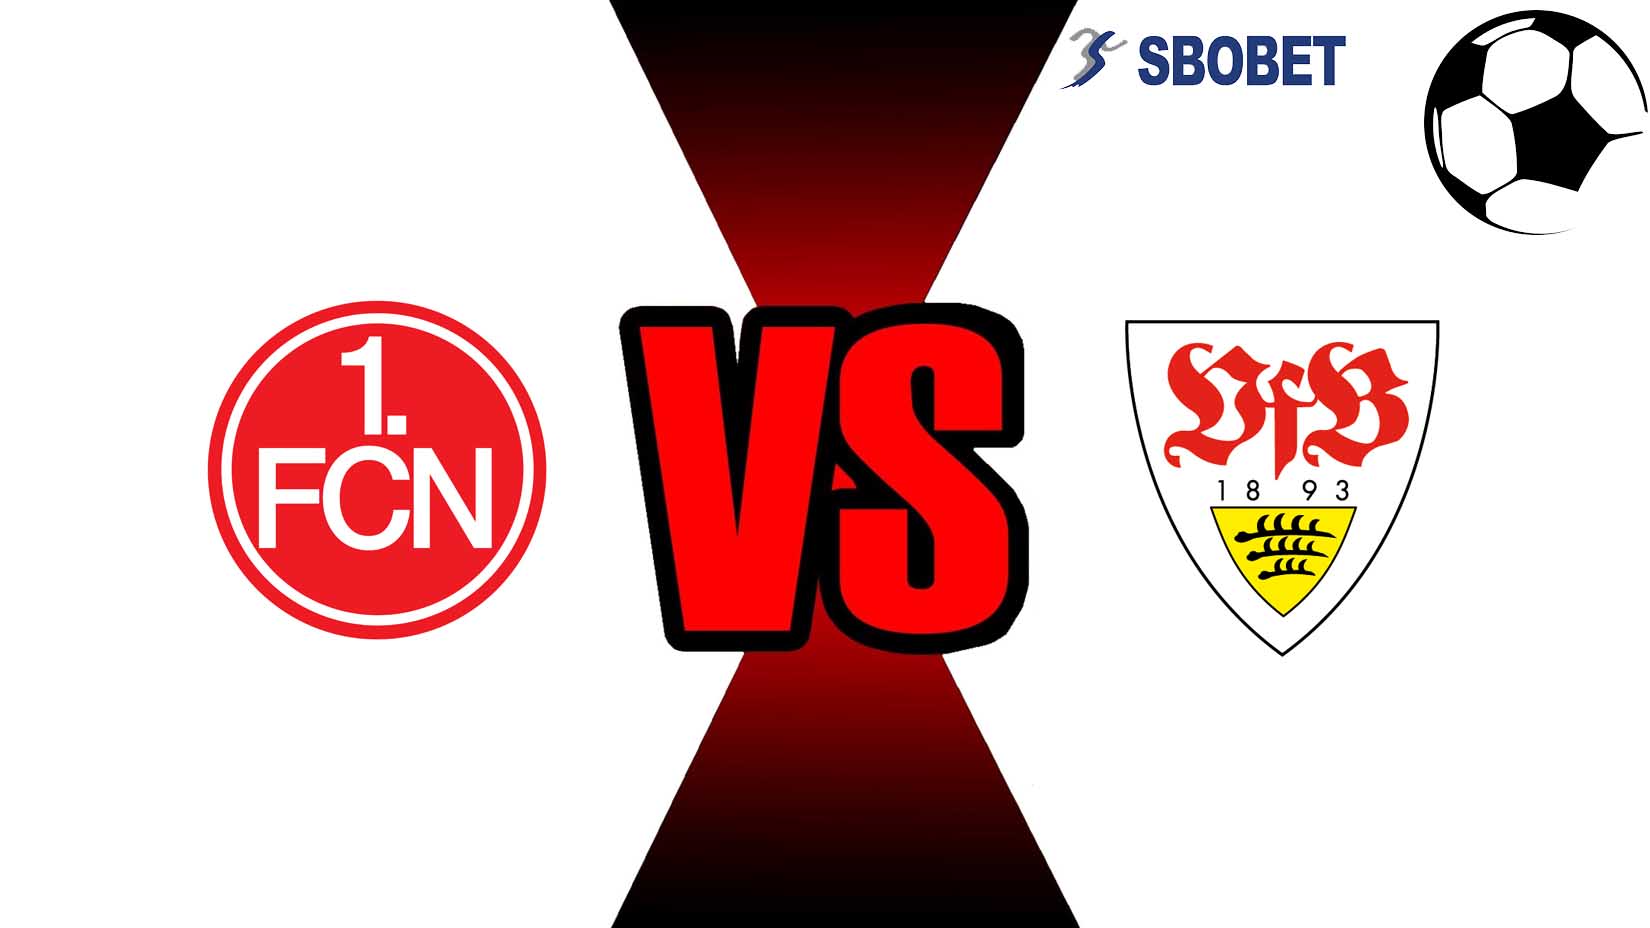 Prediksi Skor Bola Online Nurnberg vs Stuttgart 10 November 2018